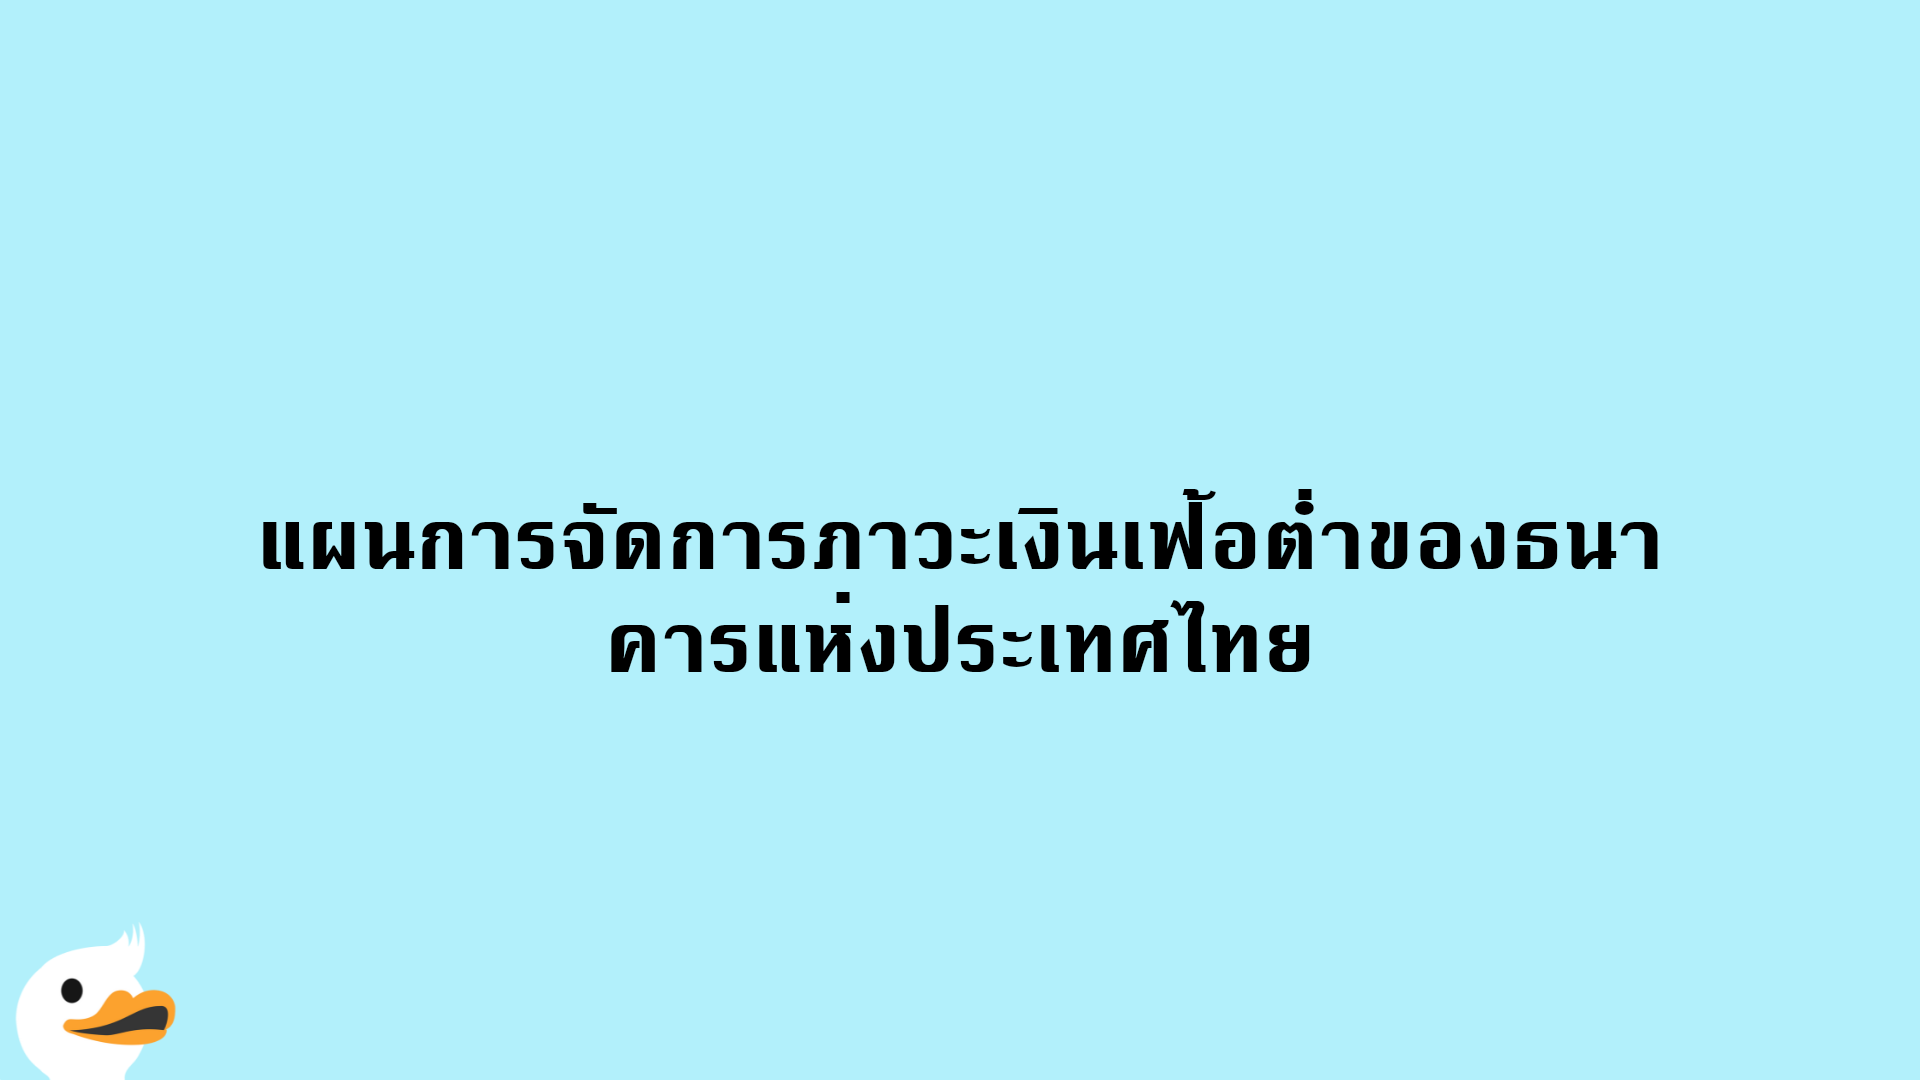 แผนการจัดการภาวะเงินเฟ้อต่ำของธนาคารแห่งประเทศไทย